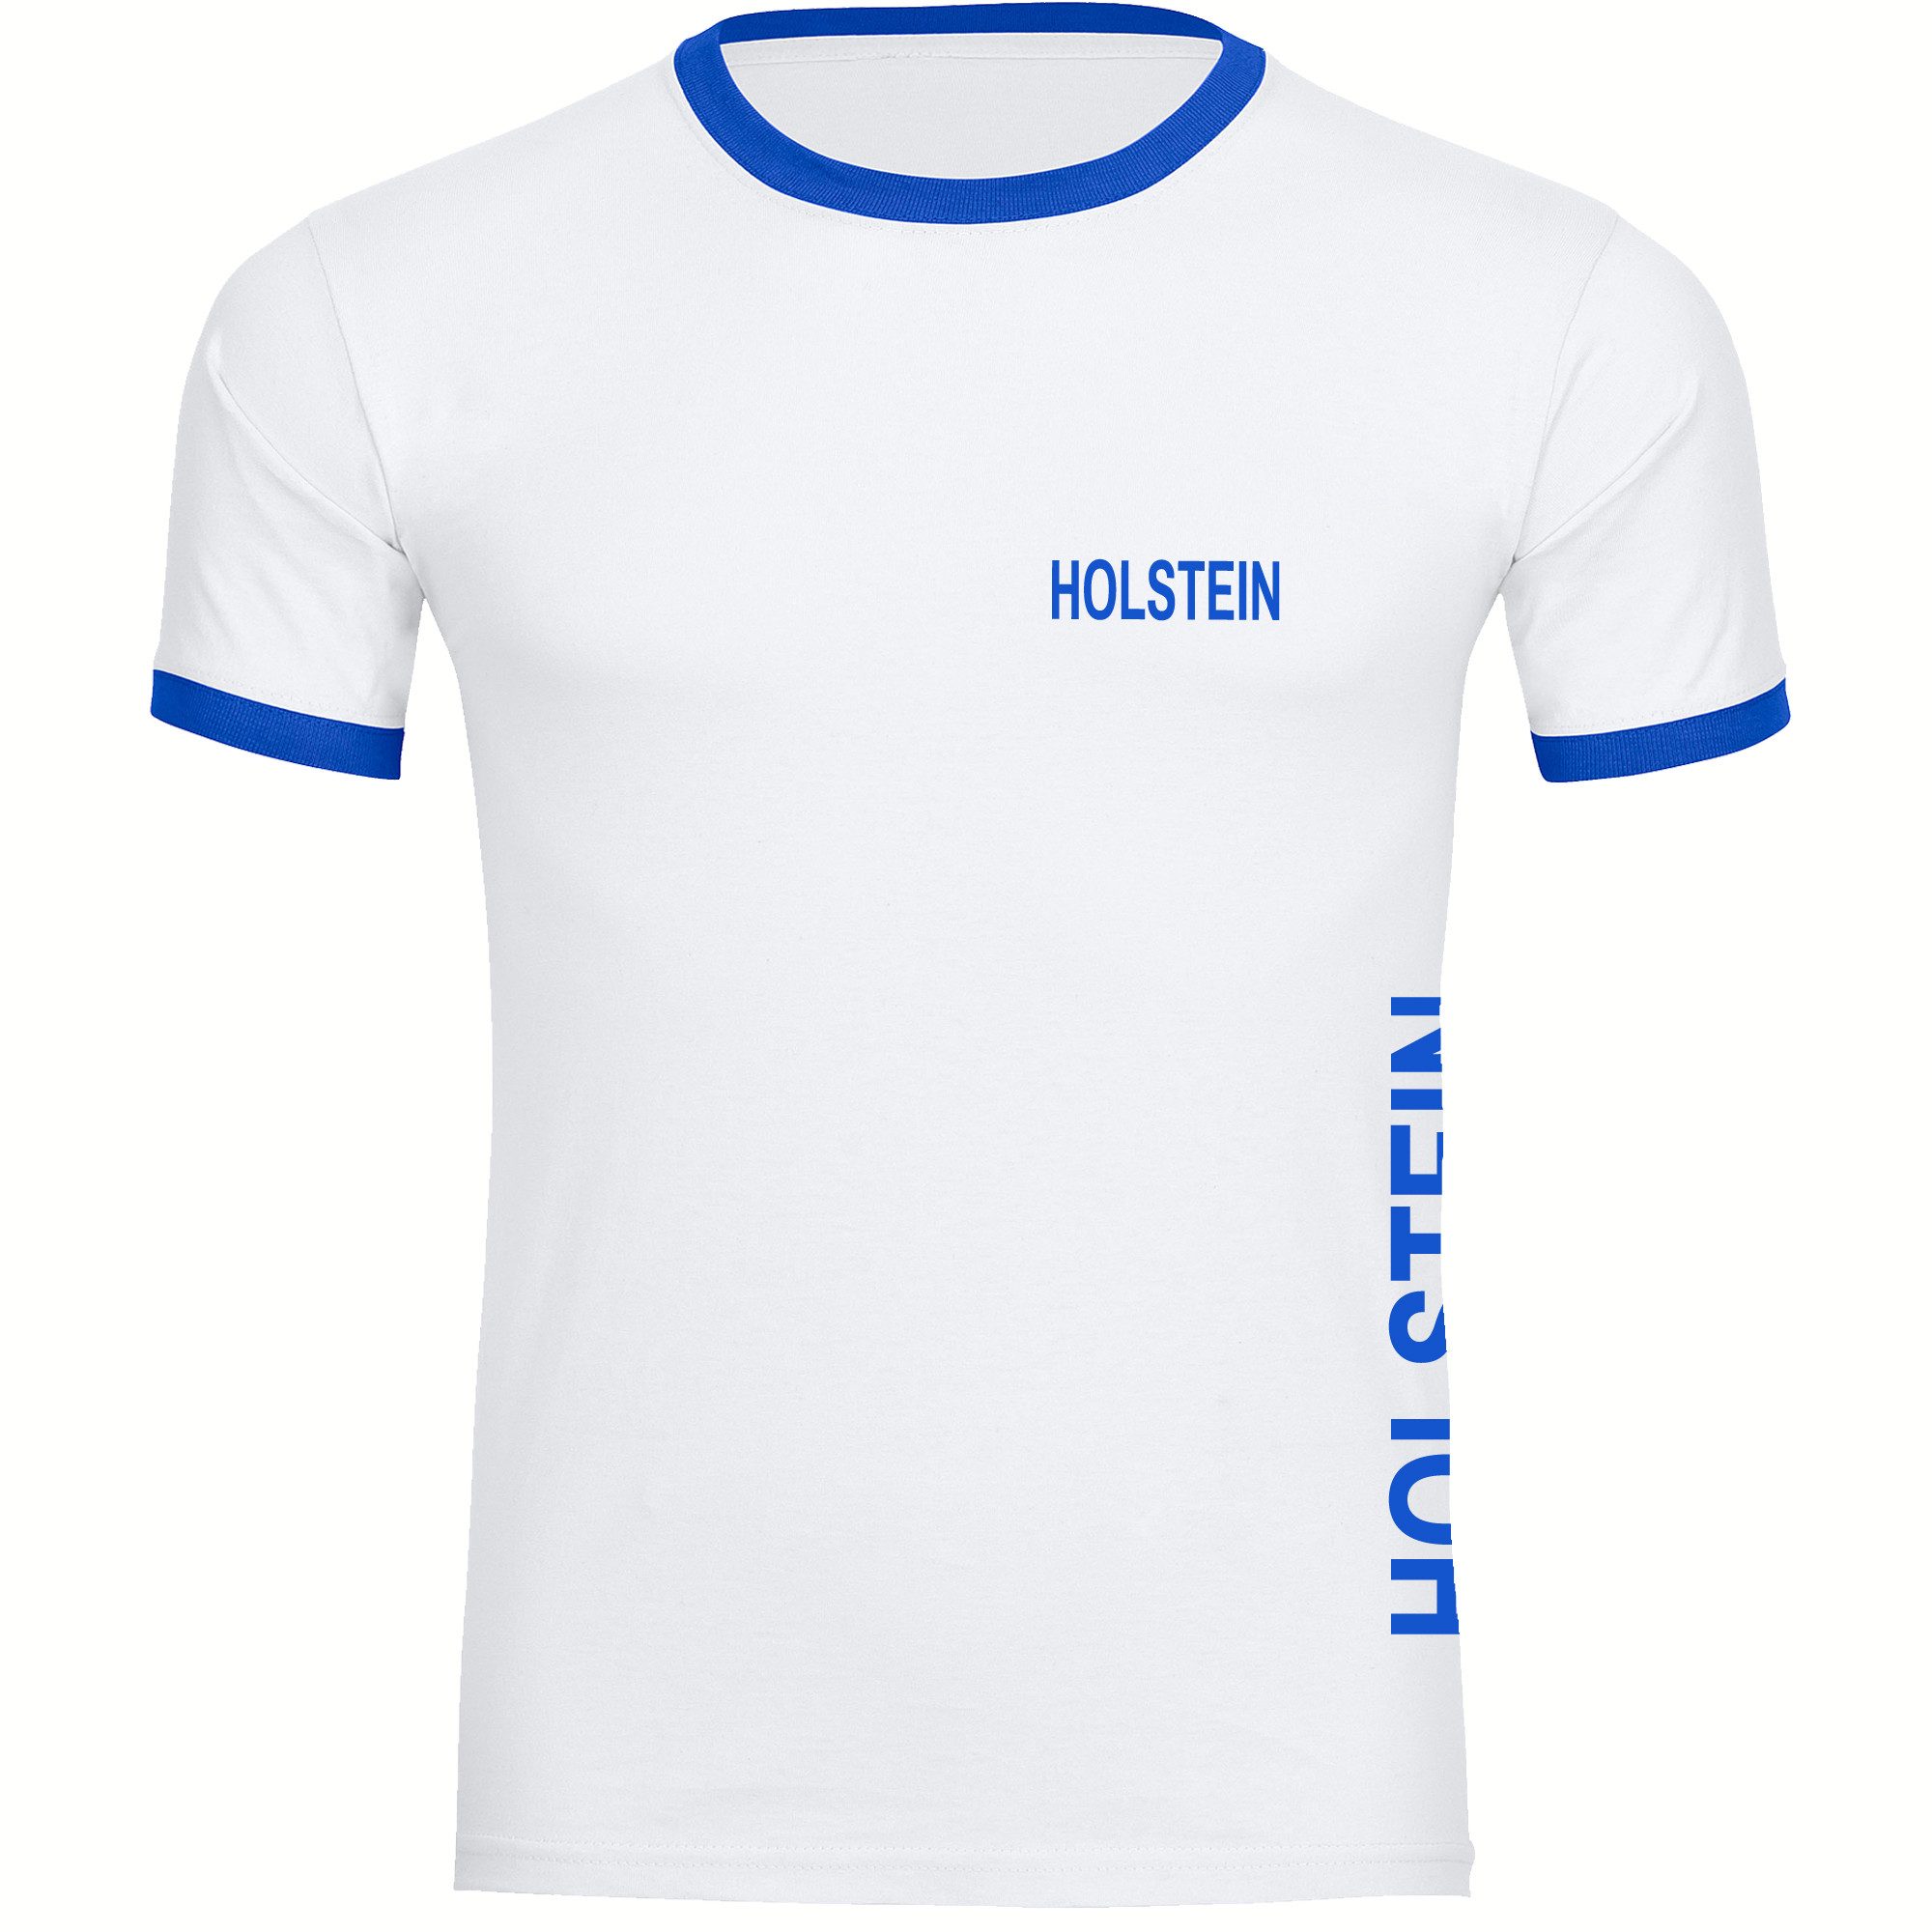 multifanshop T-Shirt Kontrast Holstein - Brust & Seite - Männer